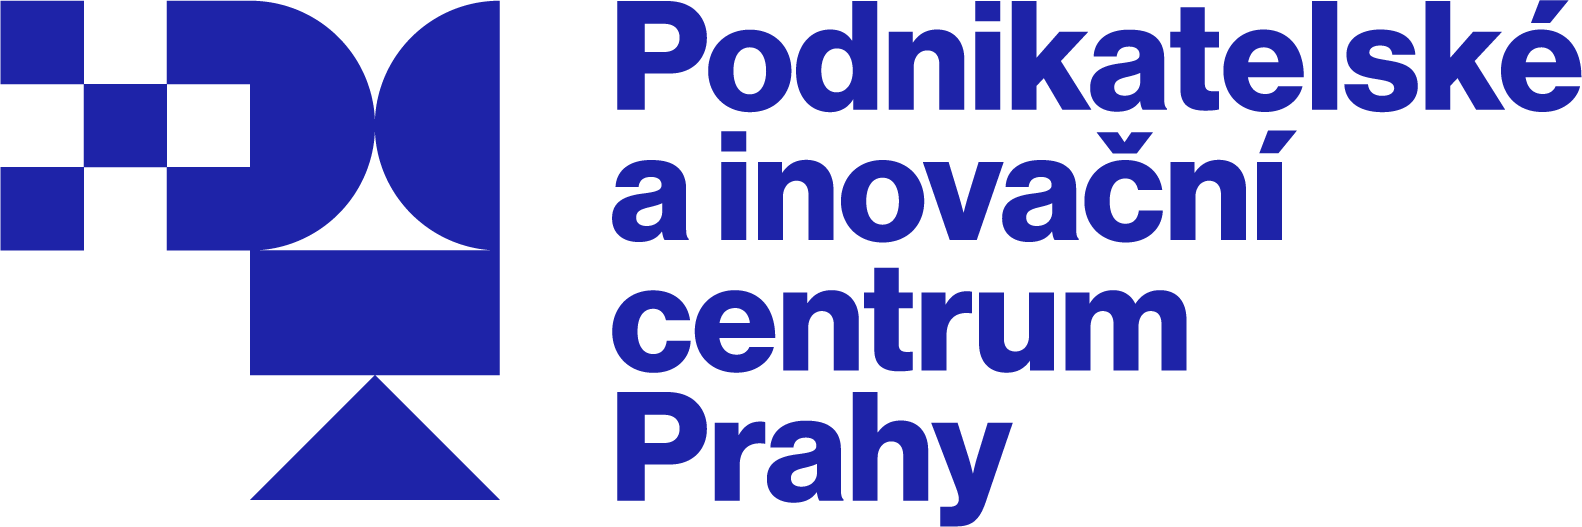 Podnikatelské a inovační centrum Prahy logo